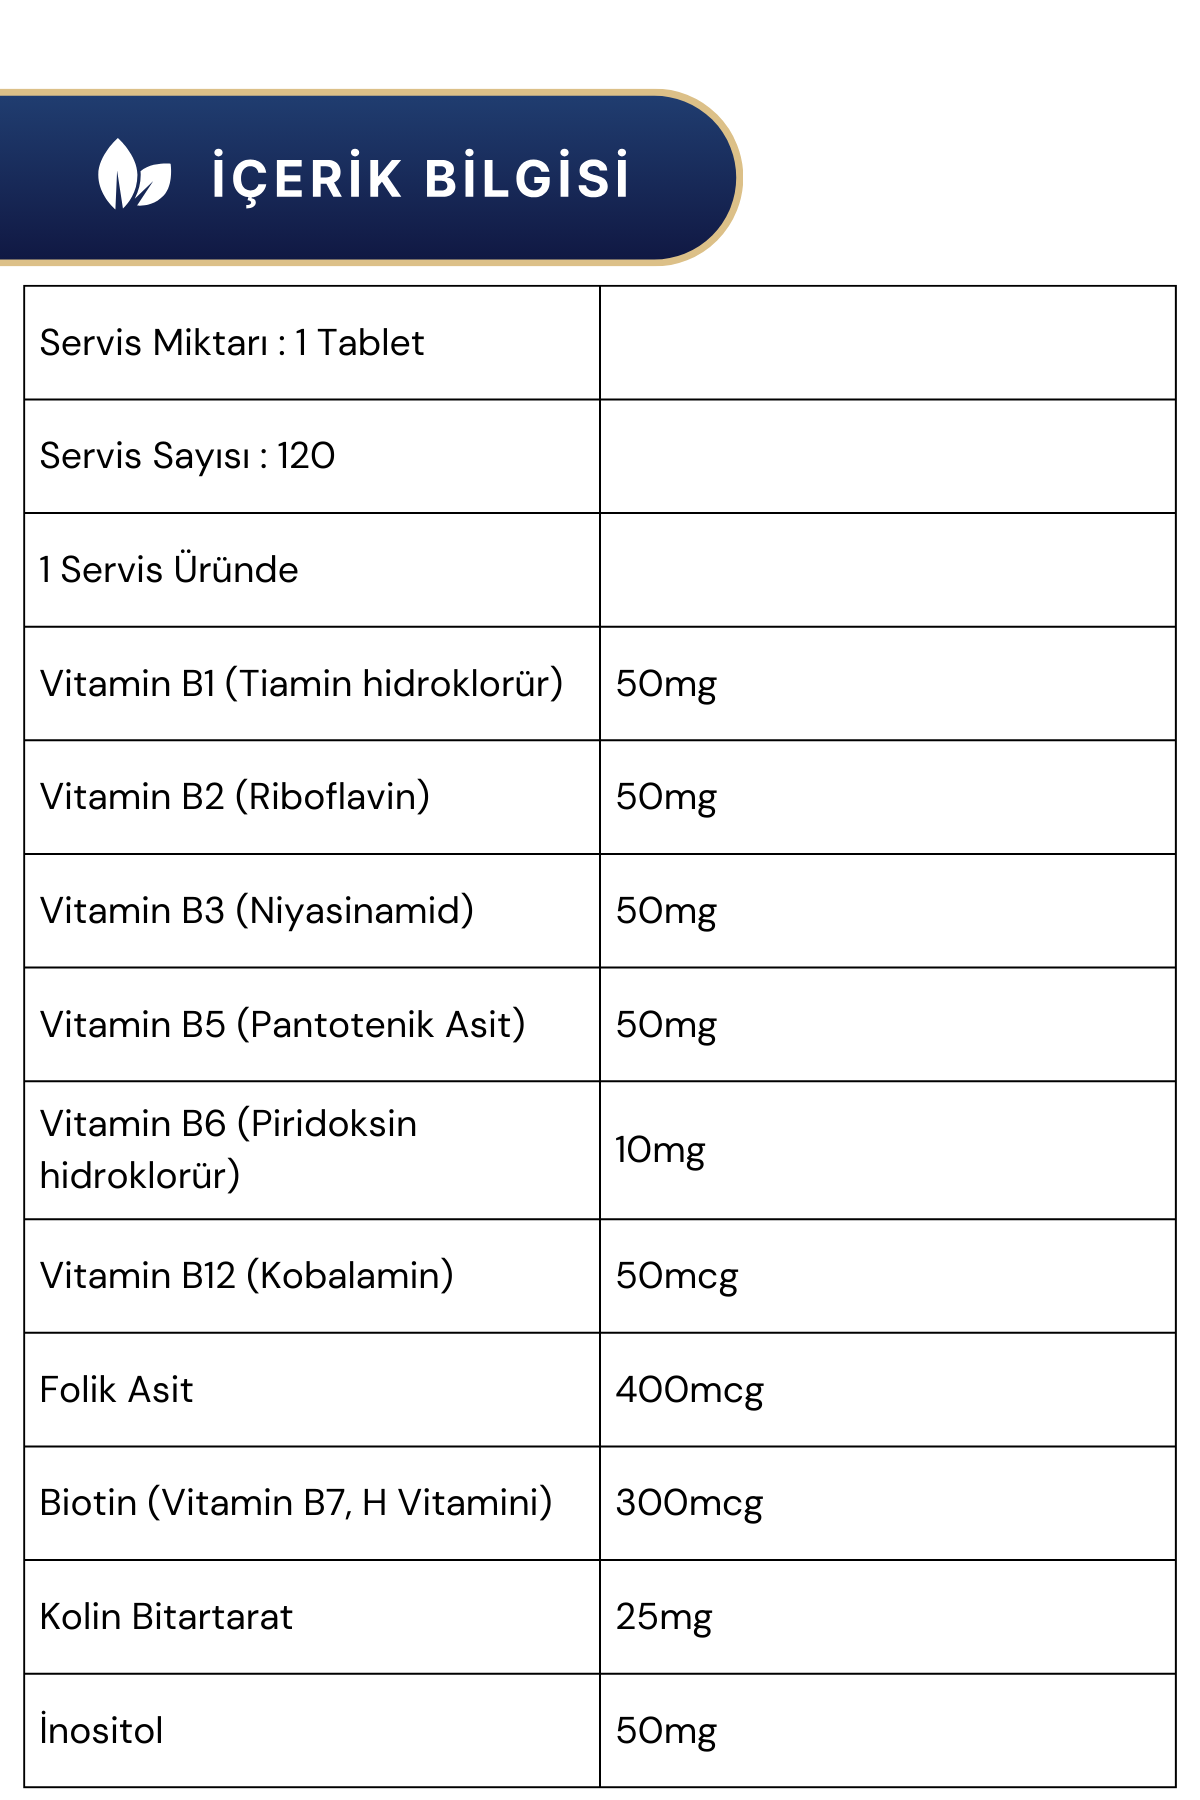 Nutraxin B Vitamin Complex 60 Tablet 2'li Paket